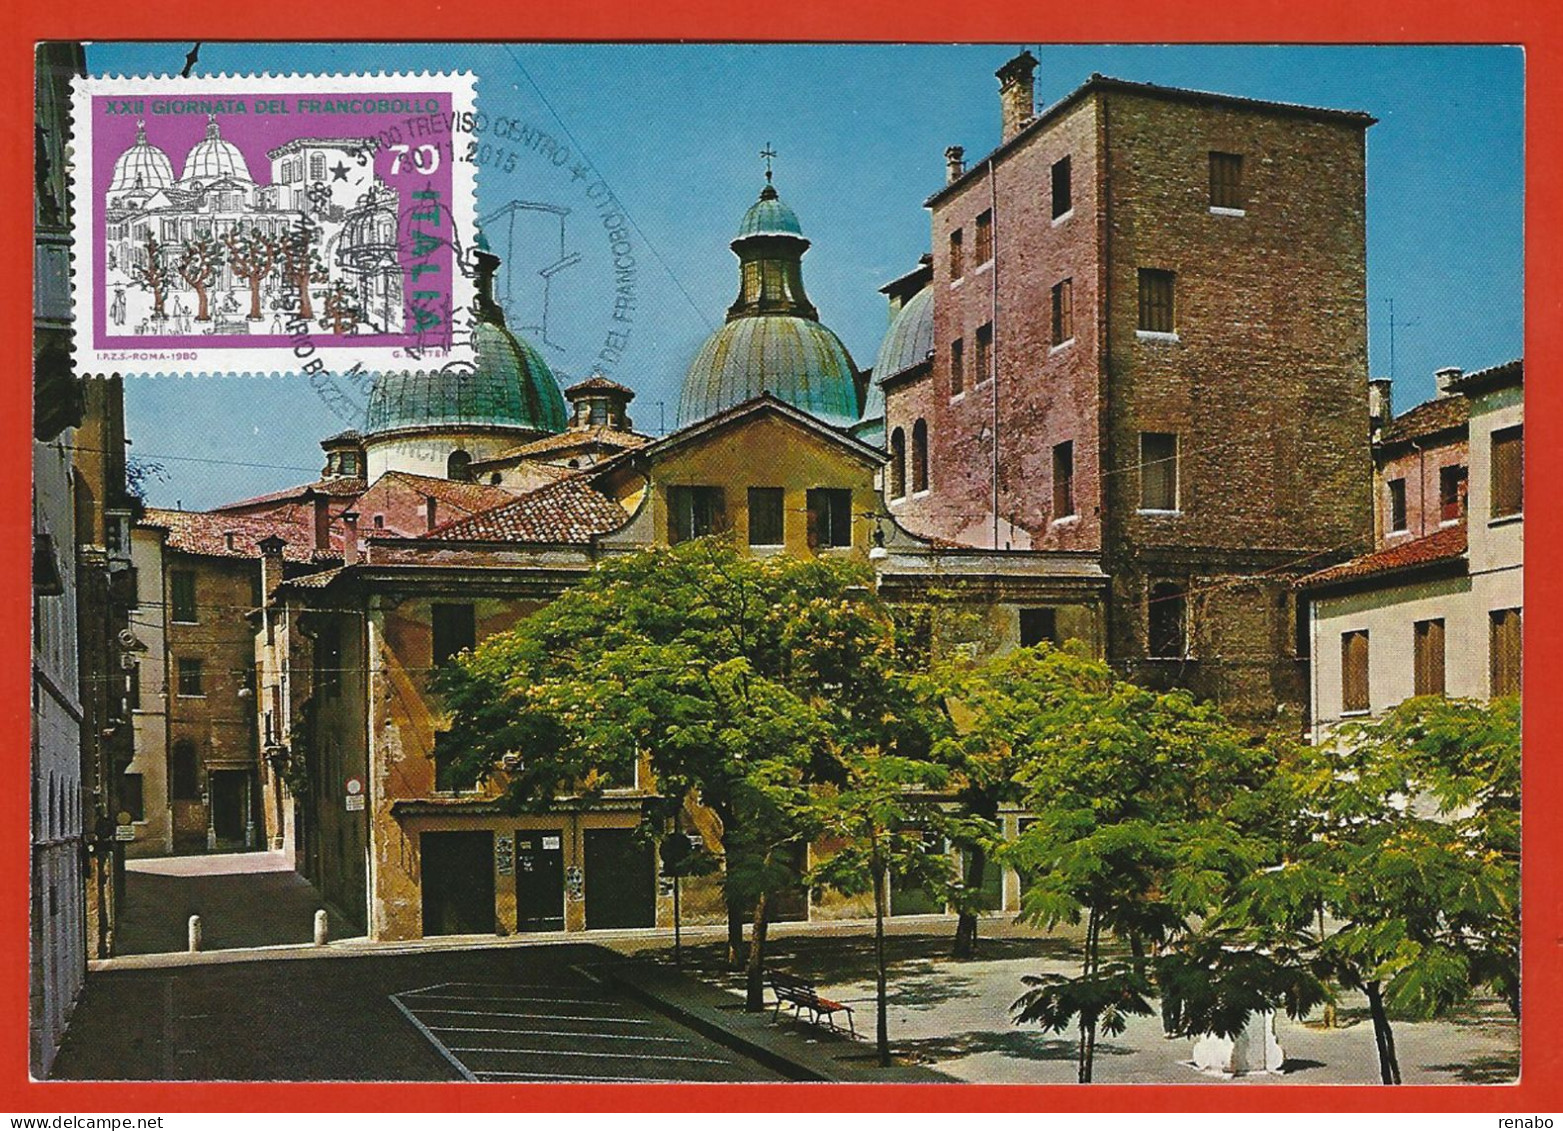 Italia 2015; Maximum Card, Piazza Pola A Treviso In: Giornata Francobollo 1980, In Cartolina, Annullo Speciale. - Maximumkarten (MC)